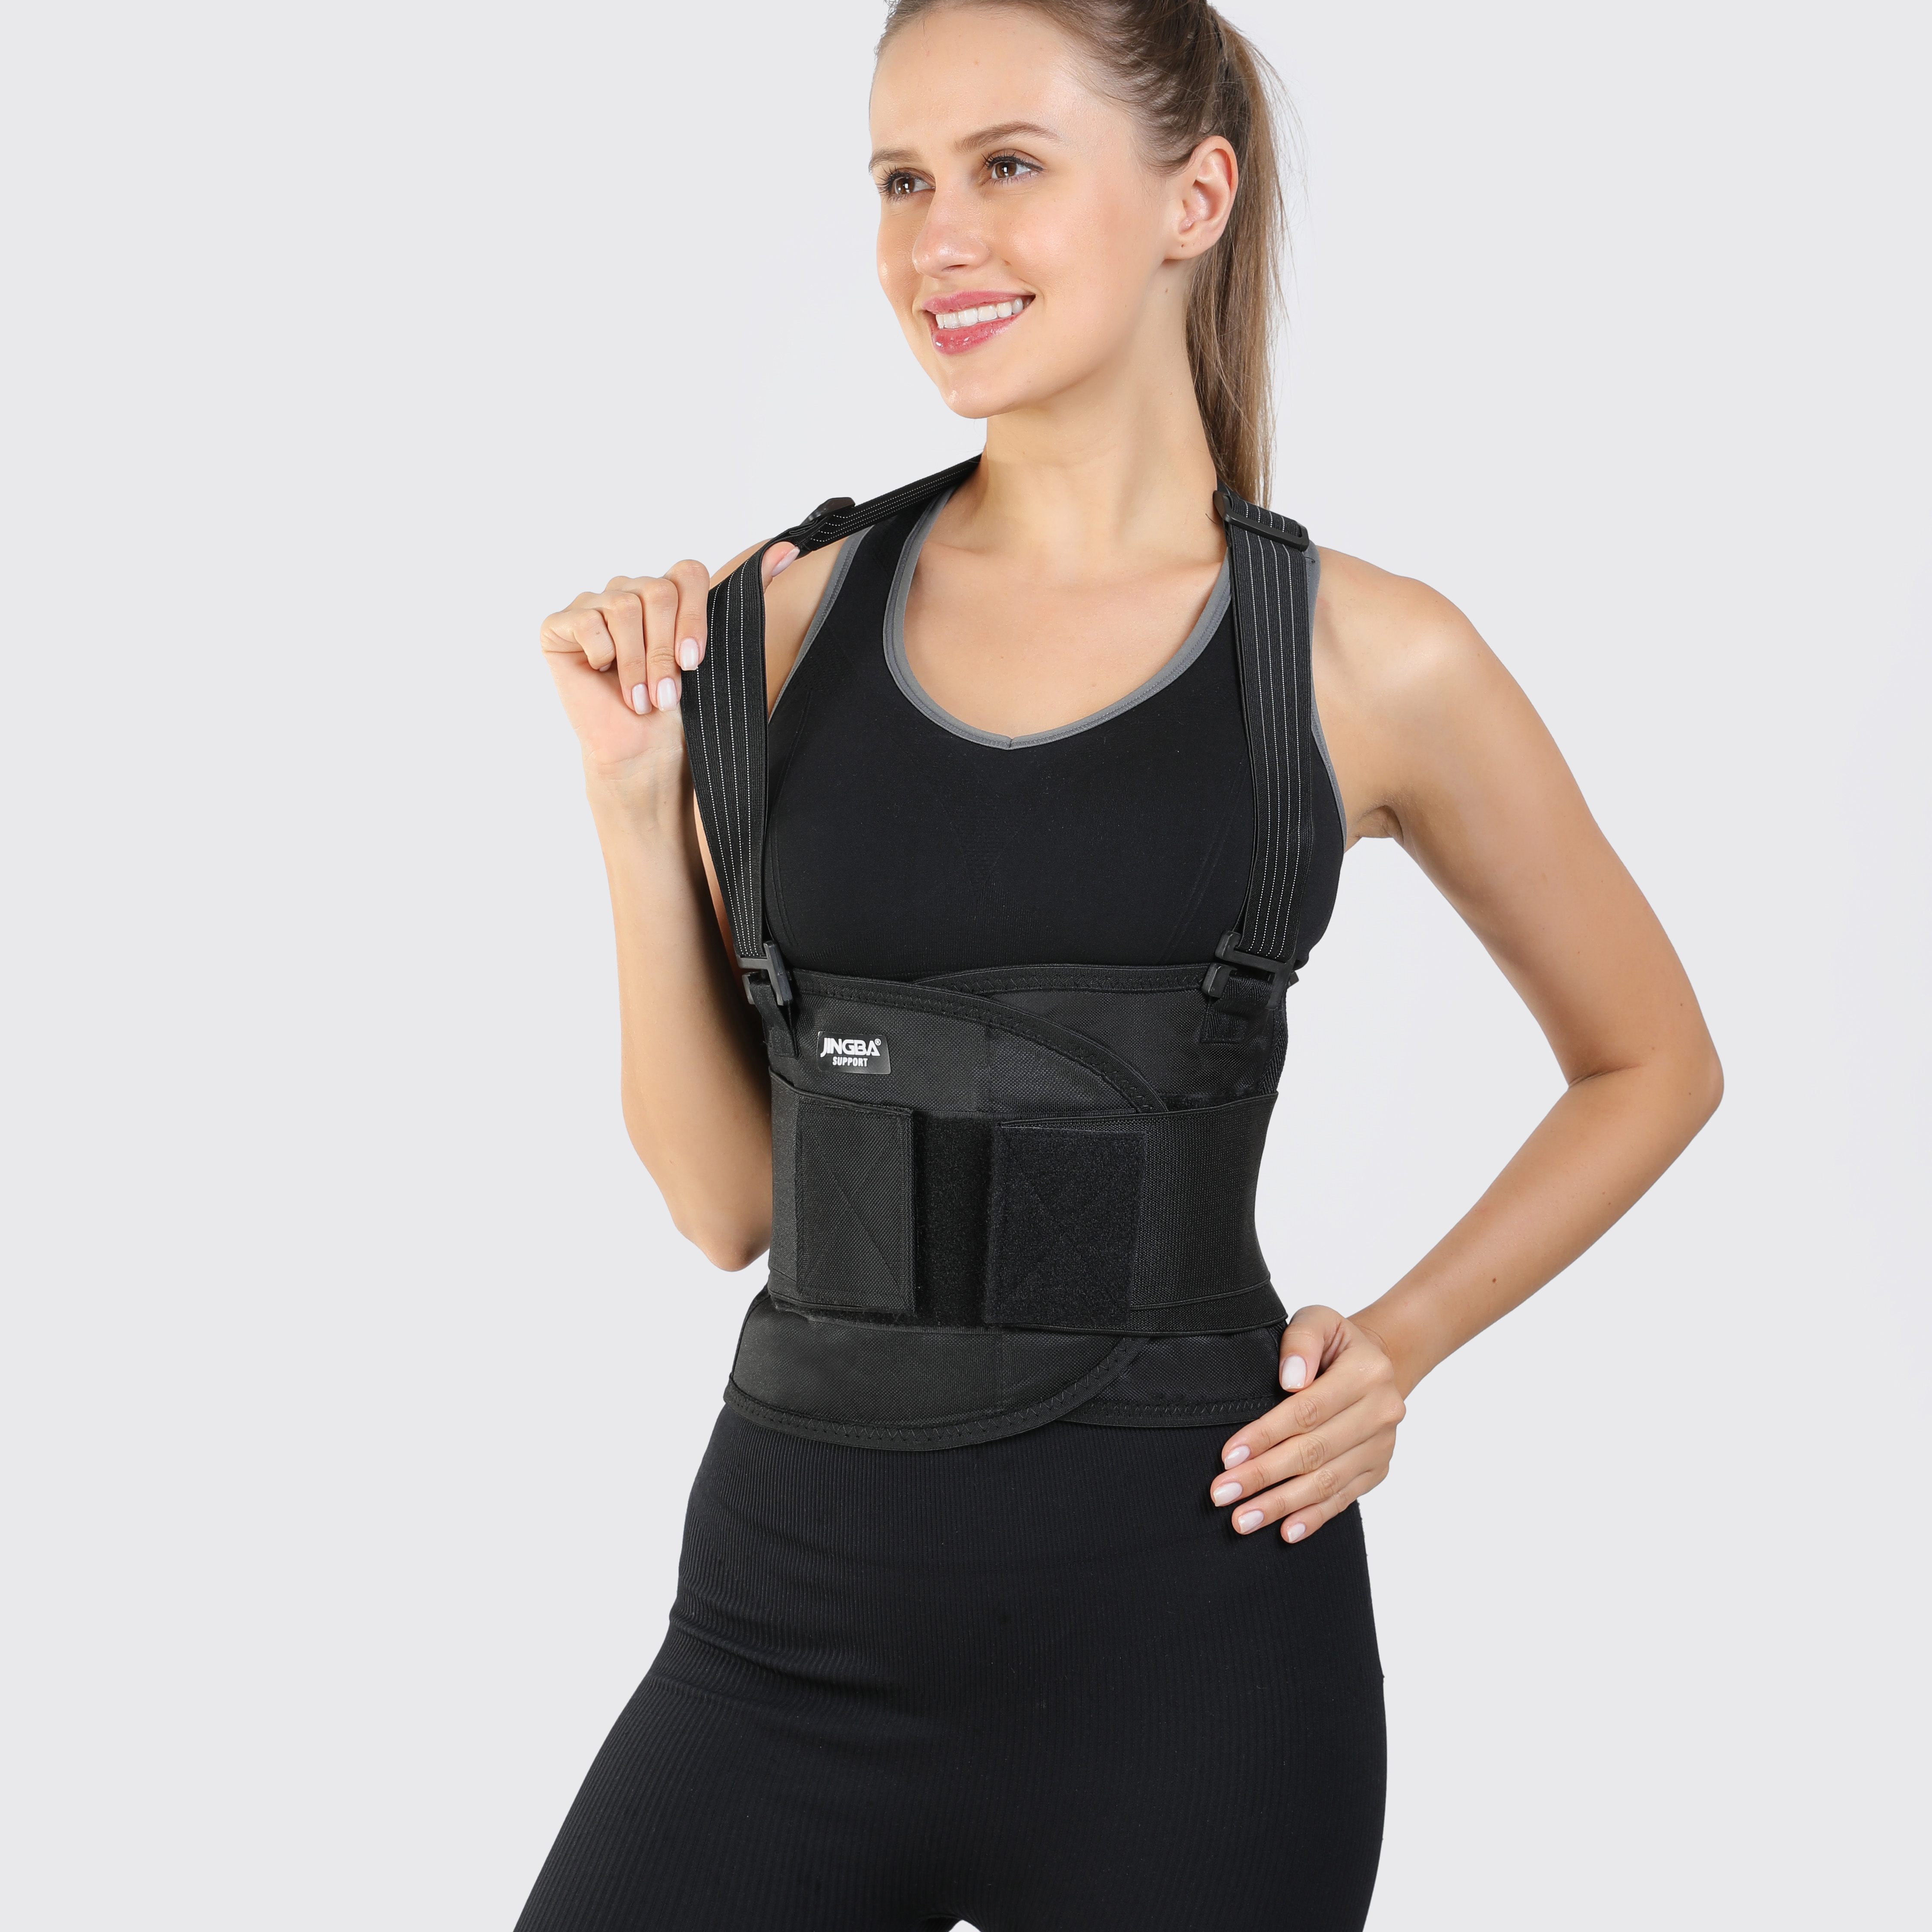 Adjustable Lower Back Brace Shoulder Straps Work Comfortable